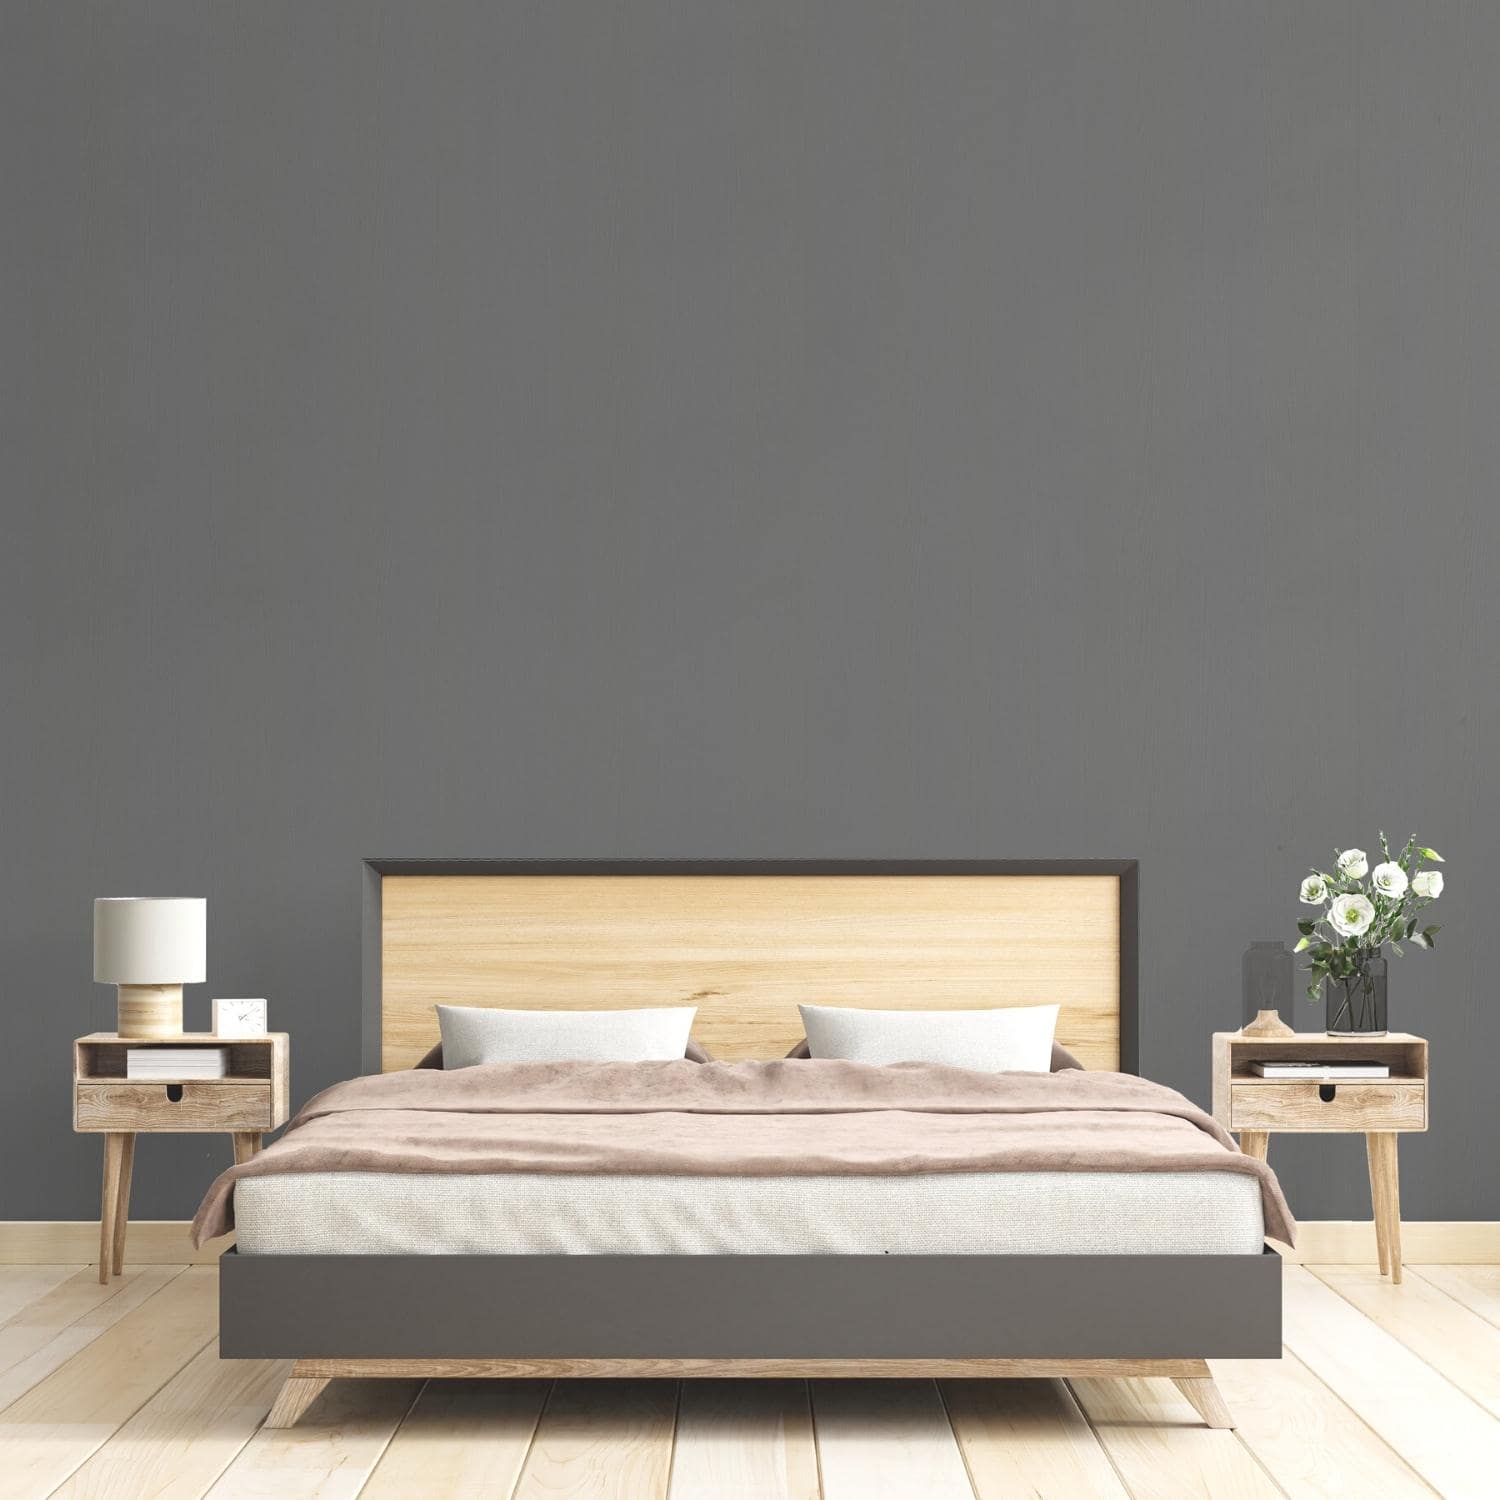 J18-film-adhesif-decoratif-colle-anti-bulle-aire-bois-gris-fonce-texture-renovation-meuble-mur-1A